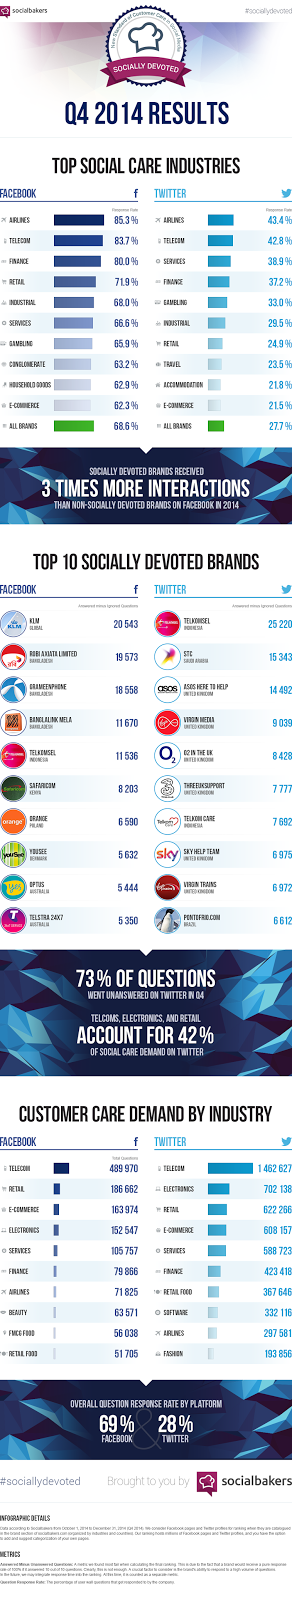 Top-Marken auf Facebook und Twitter [#Infografik]